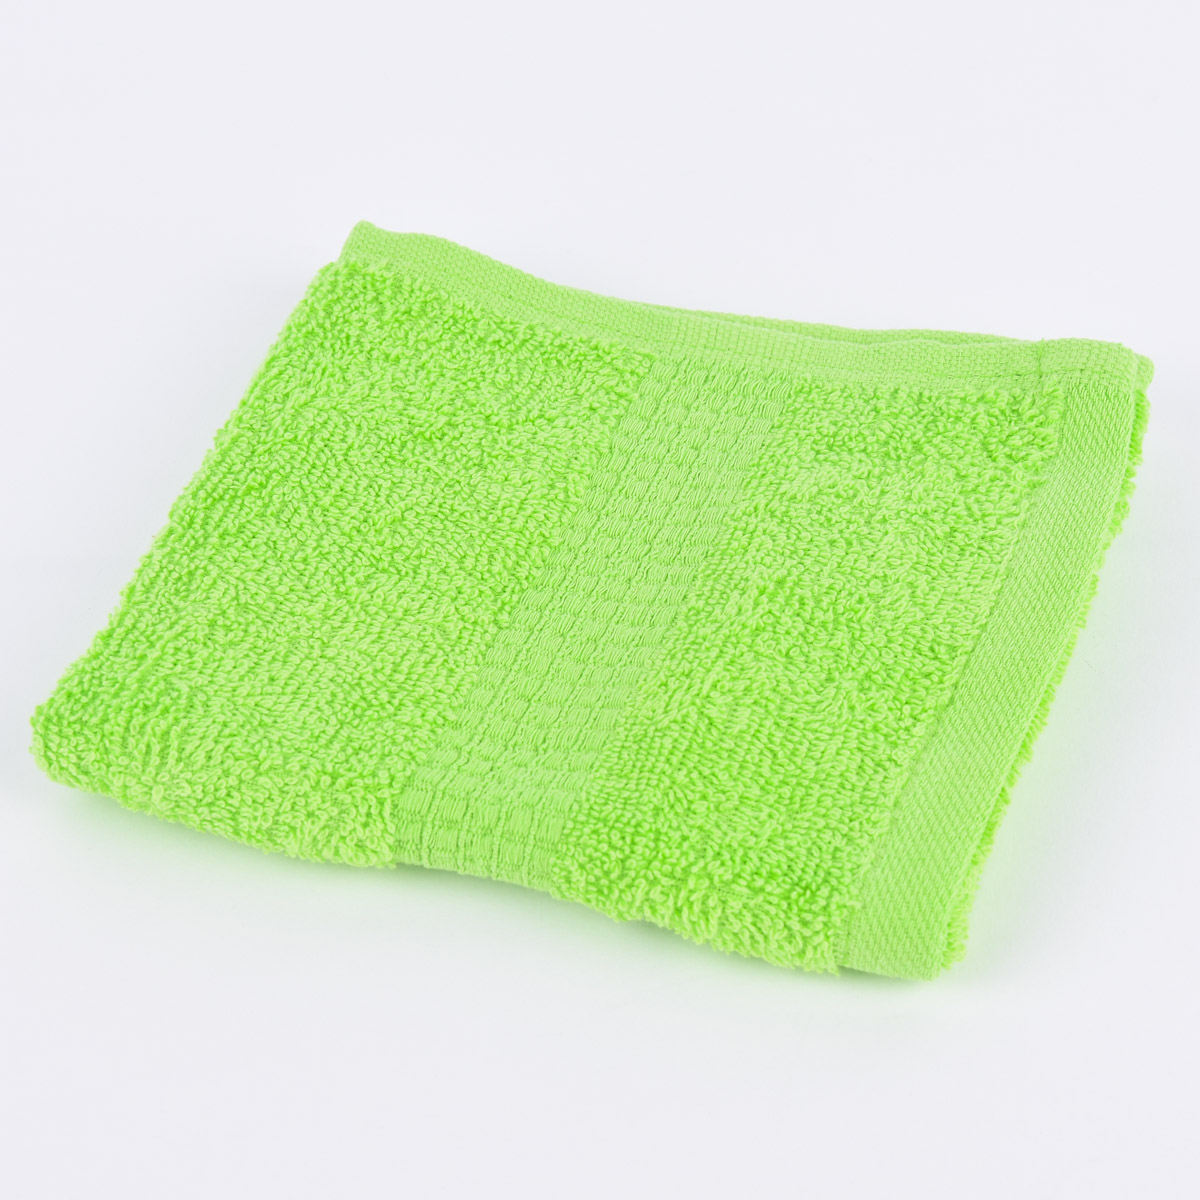 Qualitätsfrottee Handtuch Baumwolle 500g/qm 100% grün